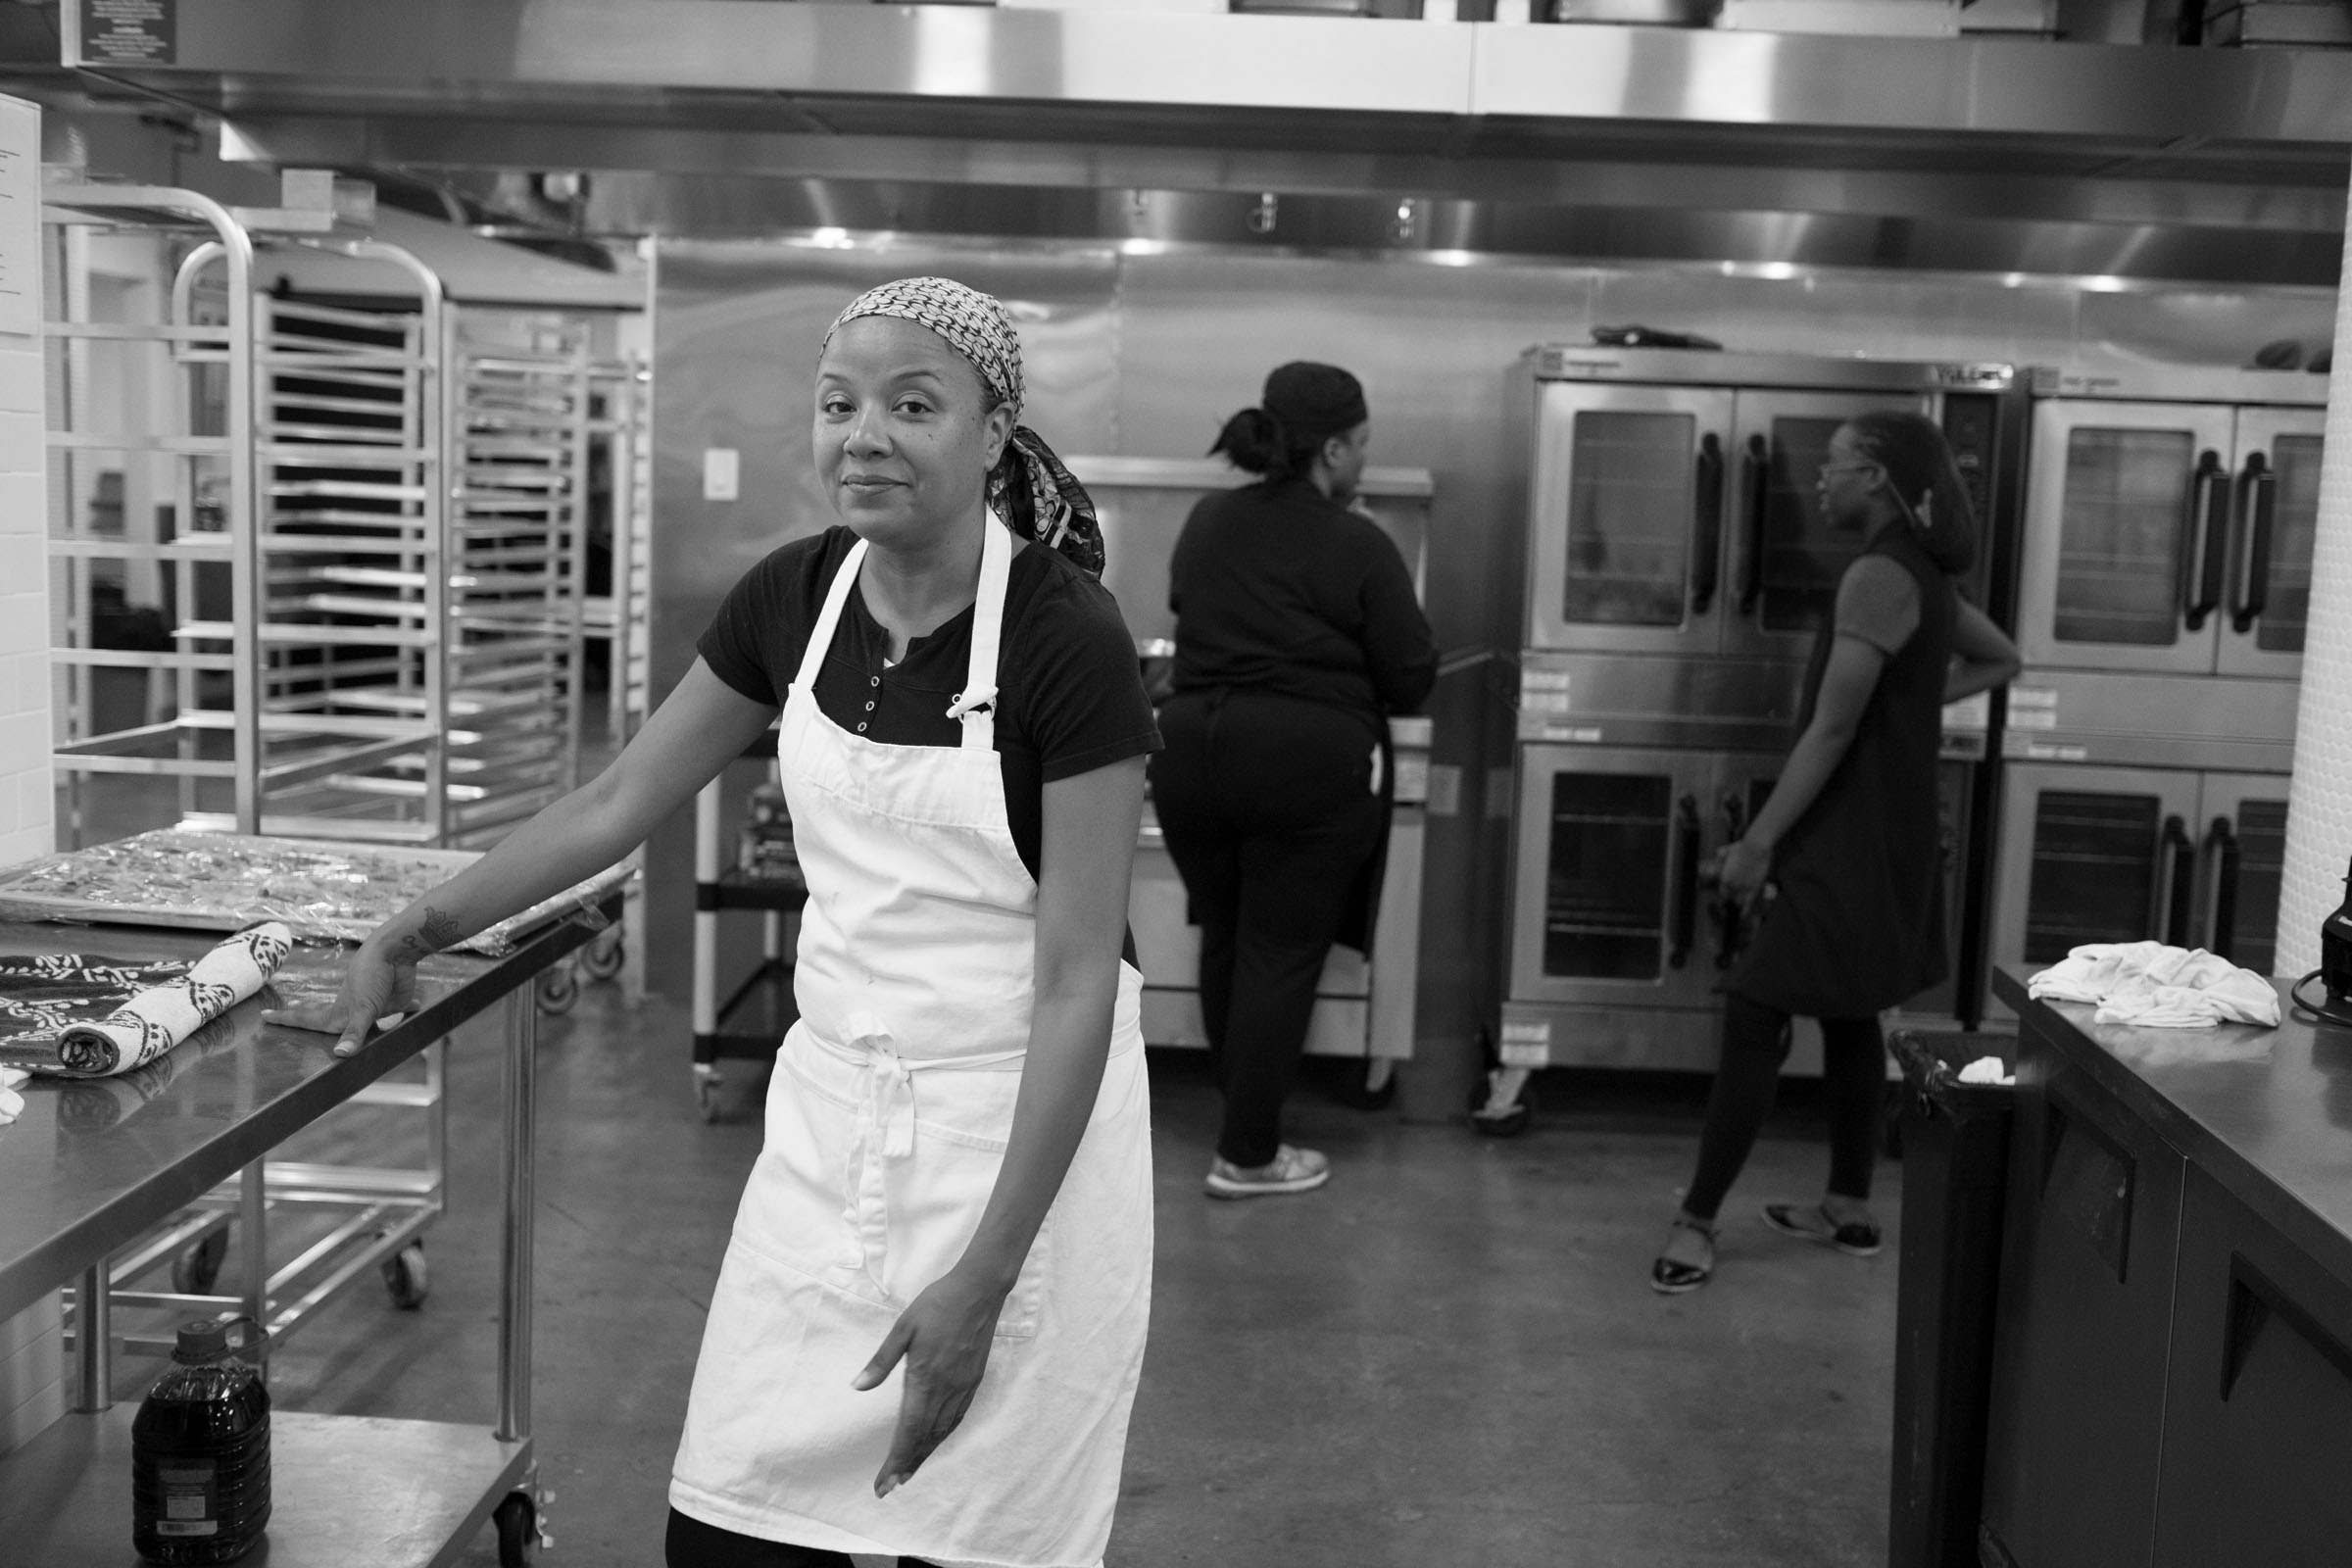   Keila on a catering job. Brooklyn, NY (2016)  